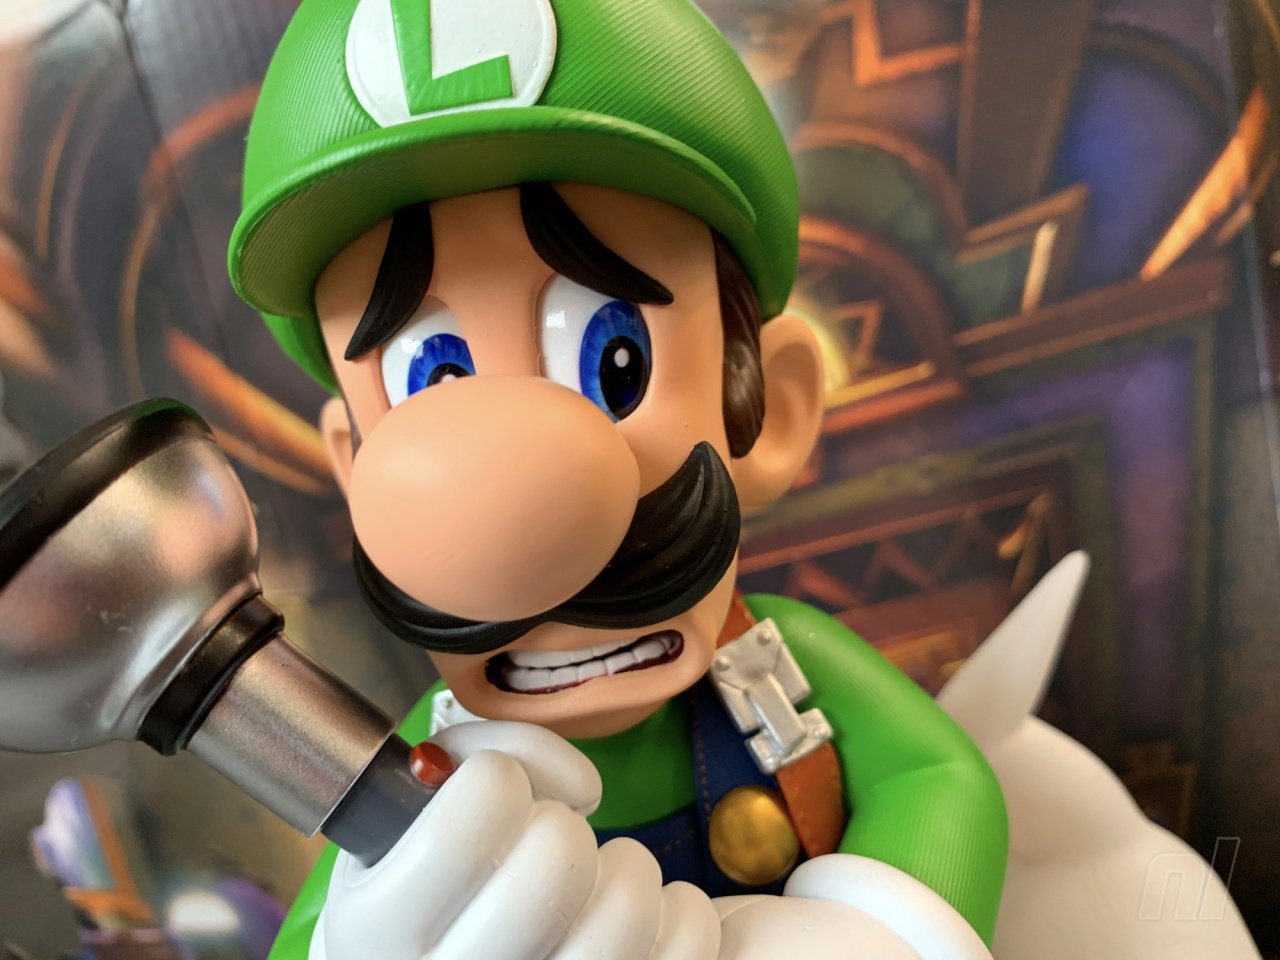 First 4 Figures Luigi Mansion 3 Deluxe Version